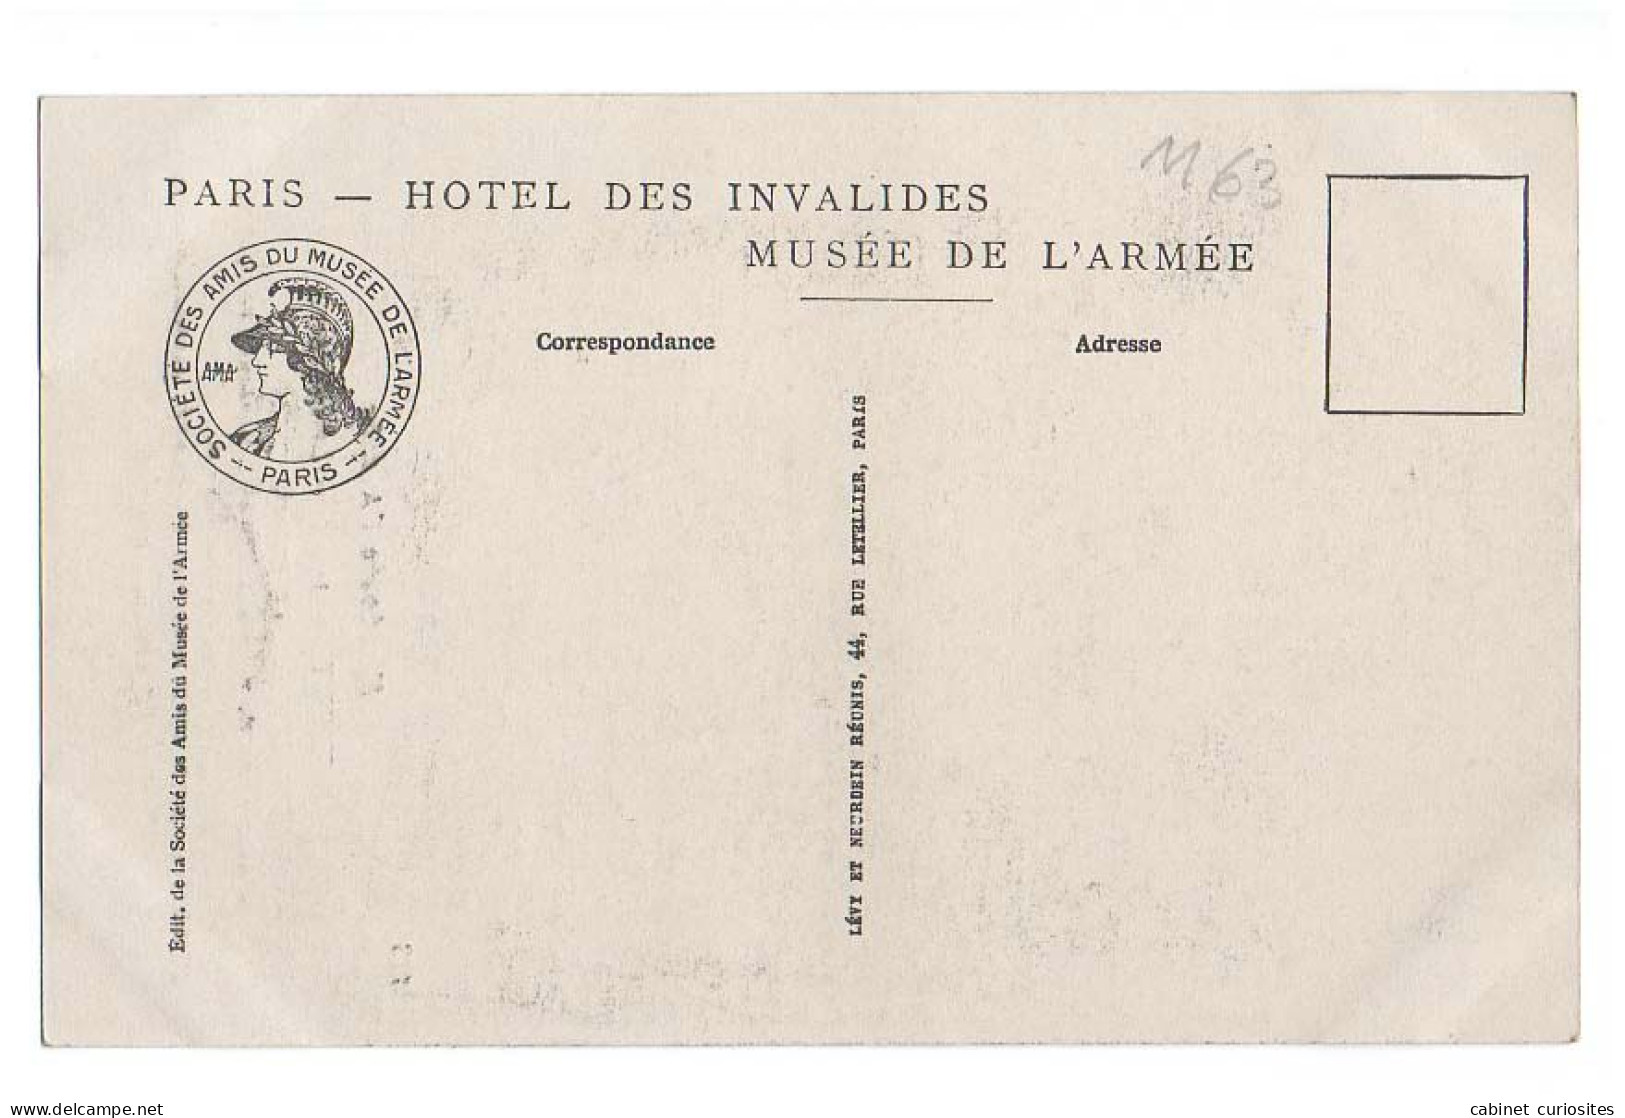 LIBÉRATEURS - Aubert 1918 - Le Poilu - Foch, Pétain, Fayolle, Clémenceau, De Castelnau, Poincaré, Galliéni, Joffre - Personen